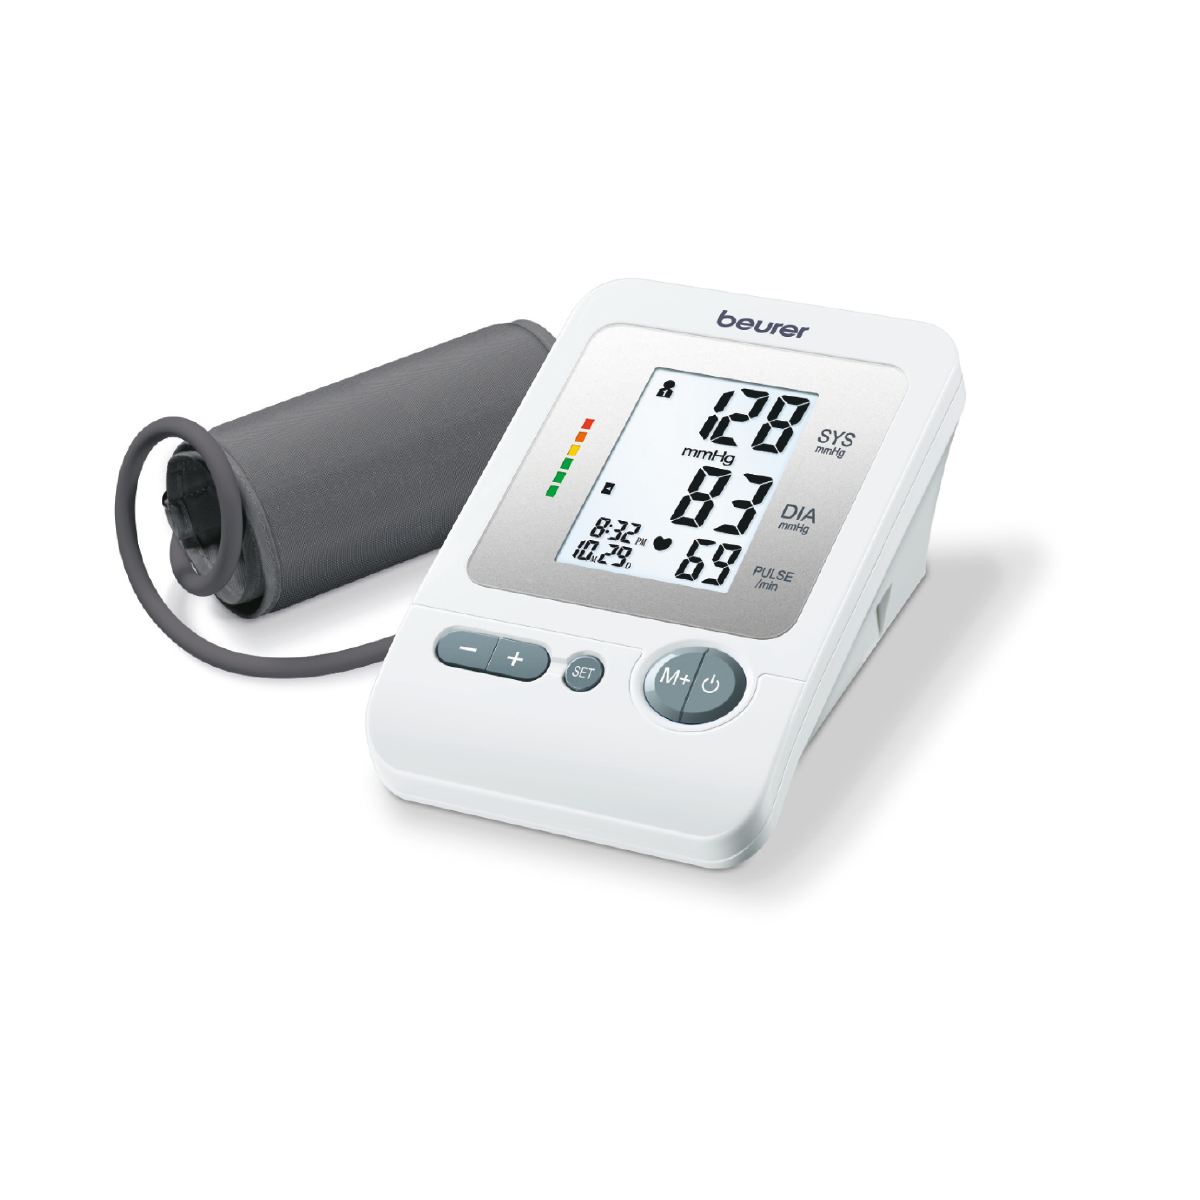 Monitor de presión arterial baumanómetro digital con indicador de riesgos y detector de arritmias BM26 Marca Beurer